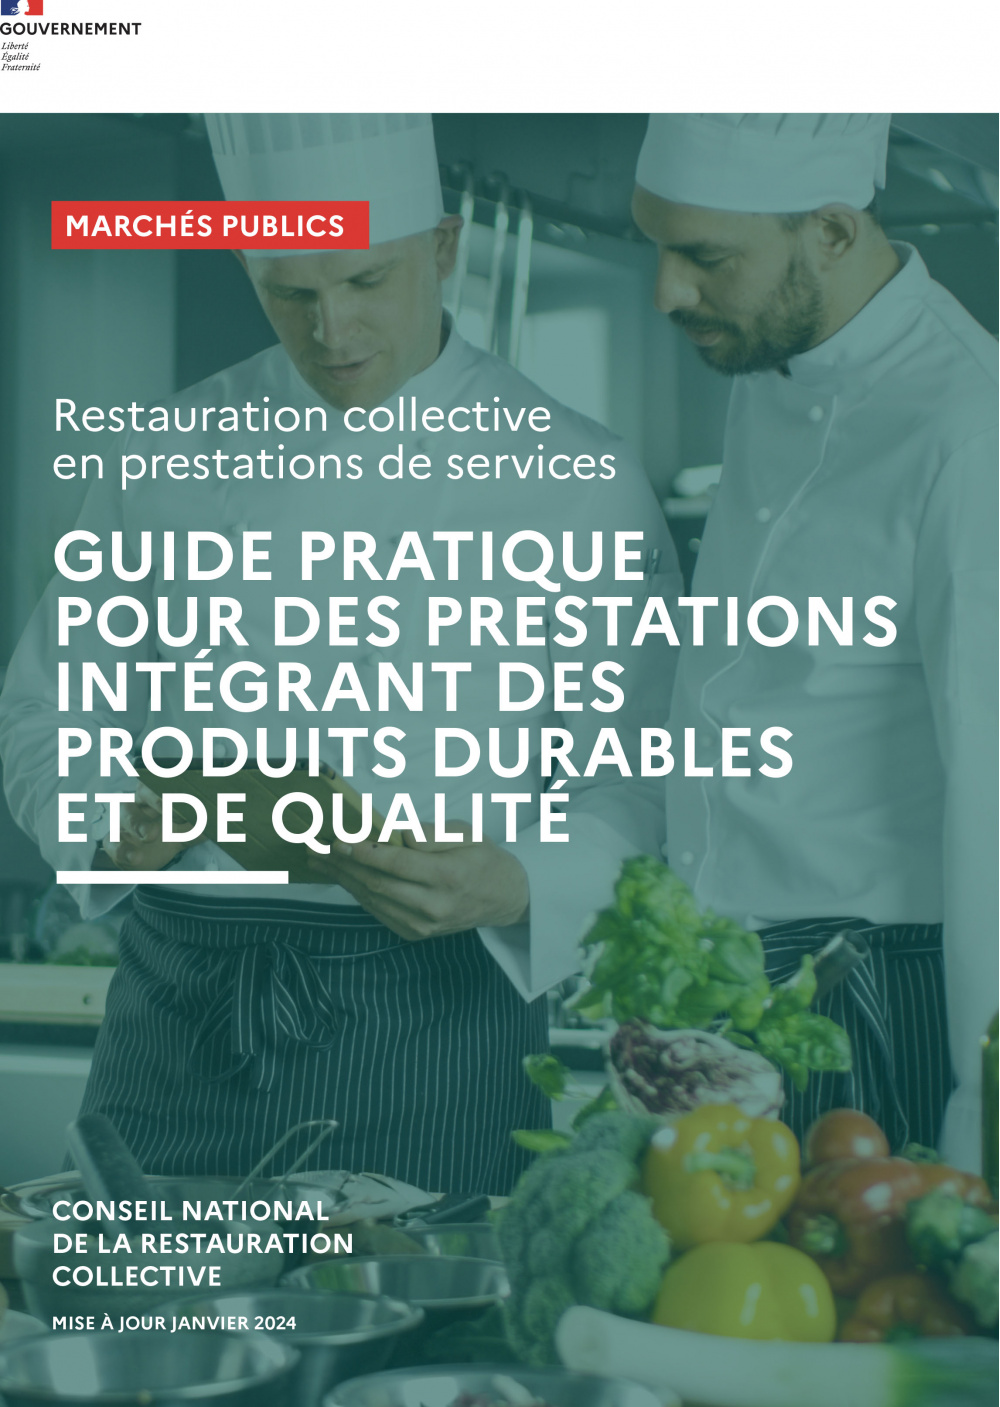 Guide pratique Acheteurs pour la restauration collective en prestation de services